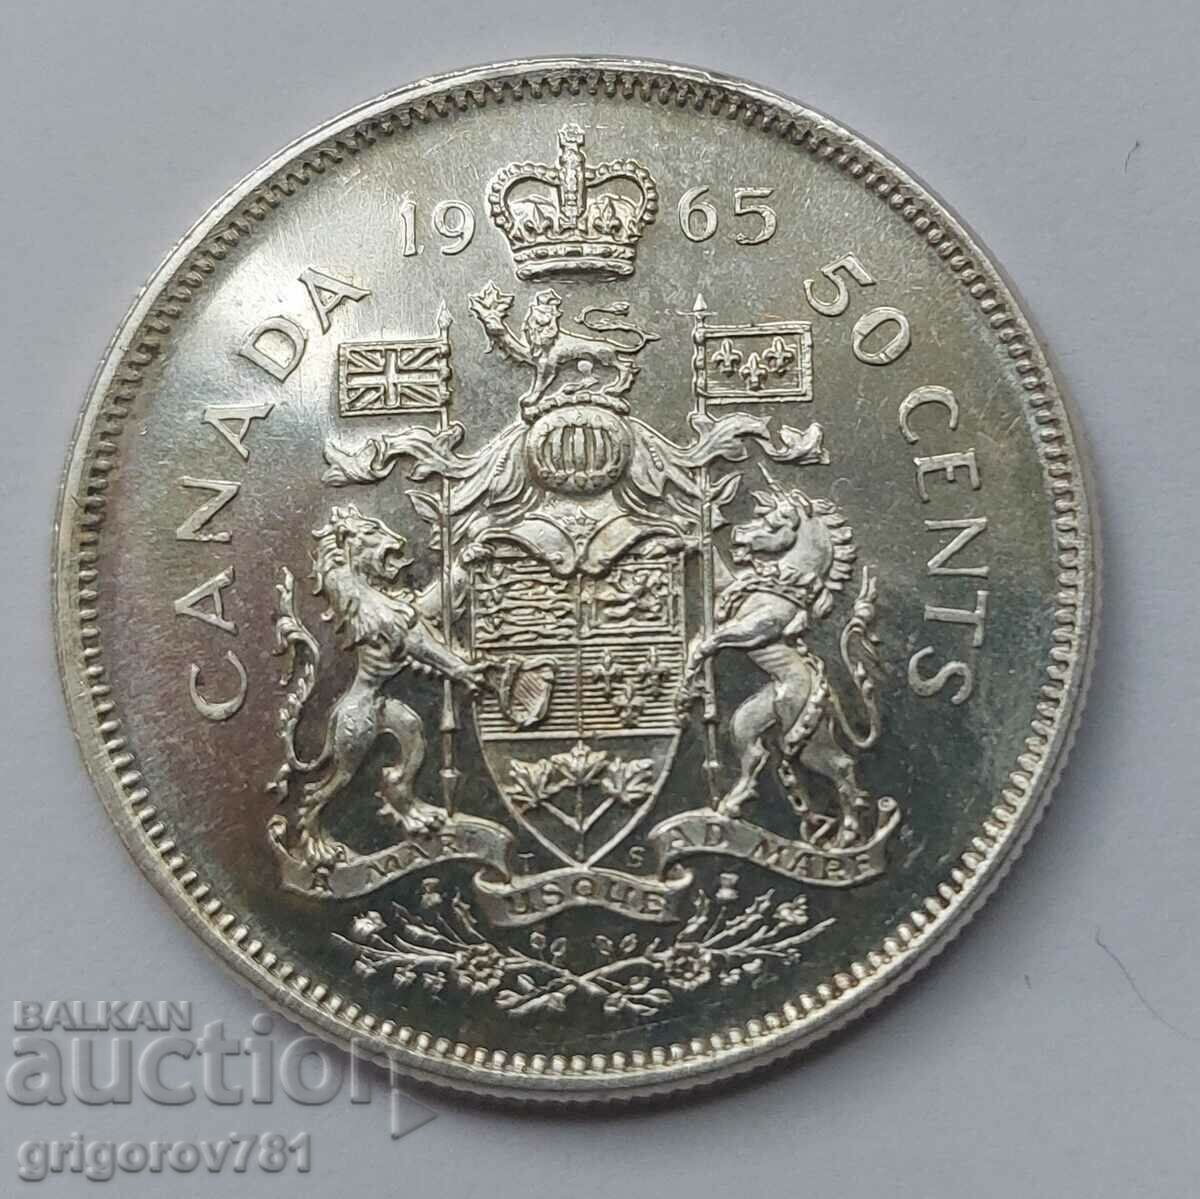 Ασήμι 50 λεπτών Καναδάς 1965 - ασημένιο νόμισμα